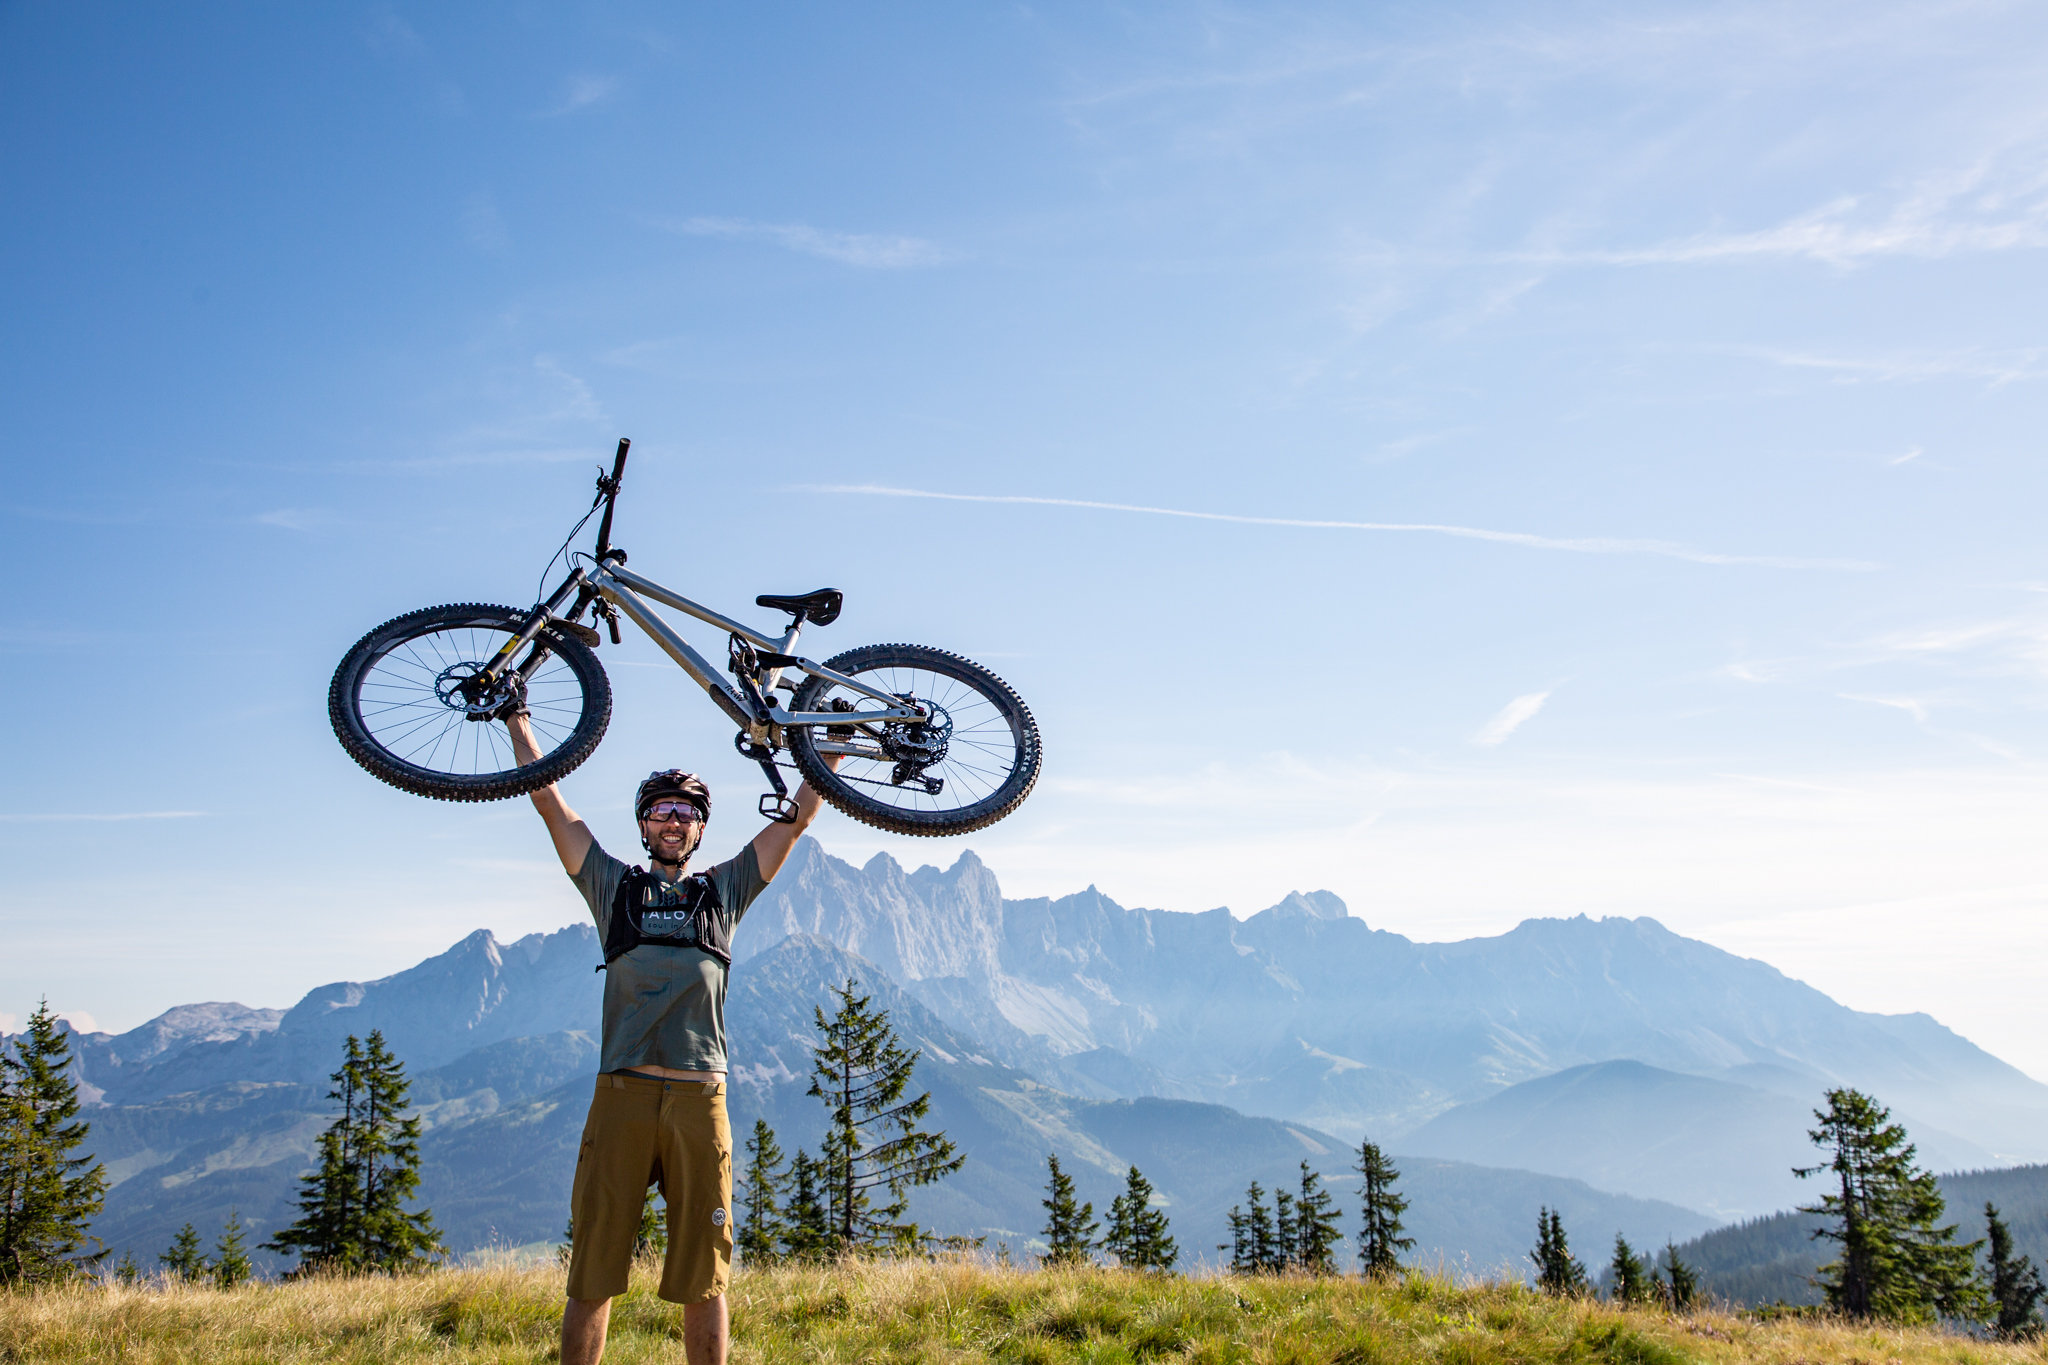 Der Stoneman Taurista, die MTB-Challenge in der Salzburger Sportwelt und Obertauern. Auf dem Bild sieht man einen Mountainbiker, der sein Rad aus lauter Freude die Herausforderung geschafft zu haben am Rossbrandgipfel in Radstadt in die Höhe stemmt.